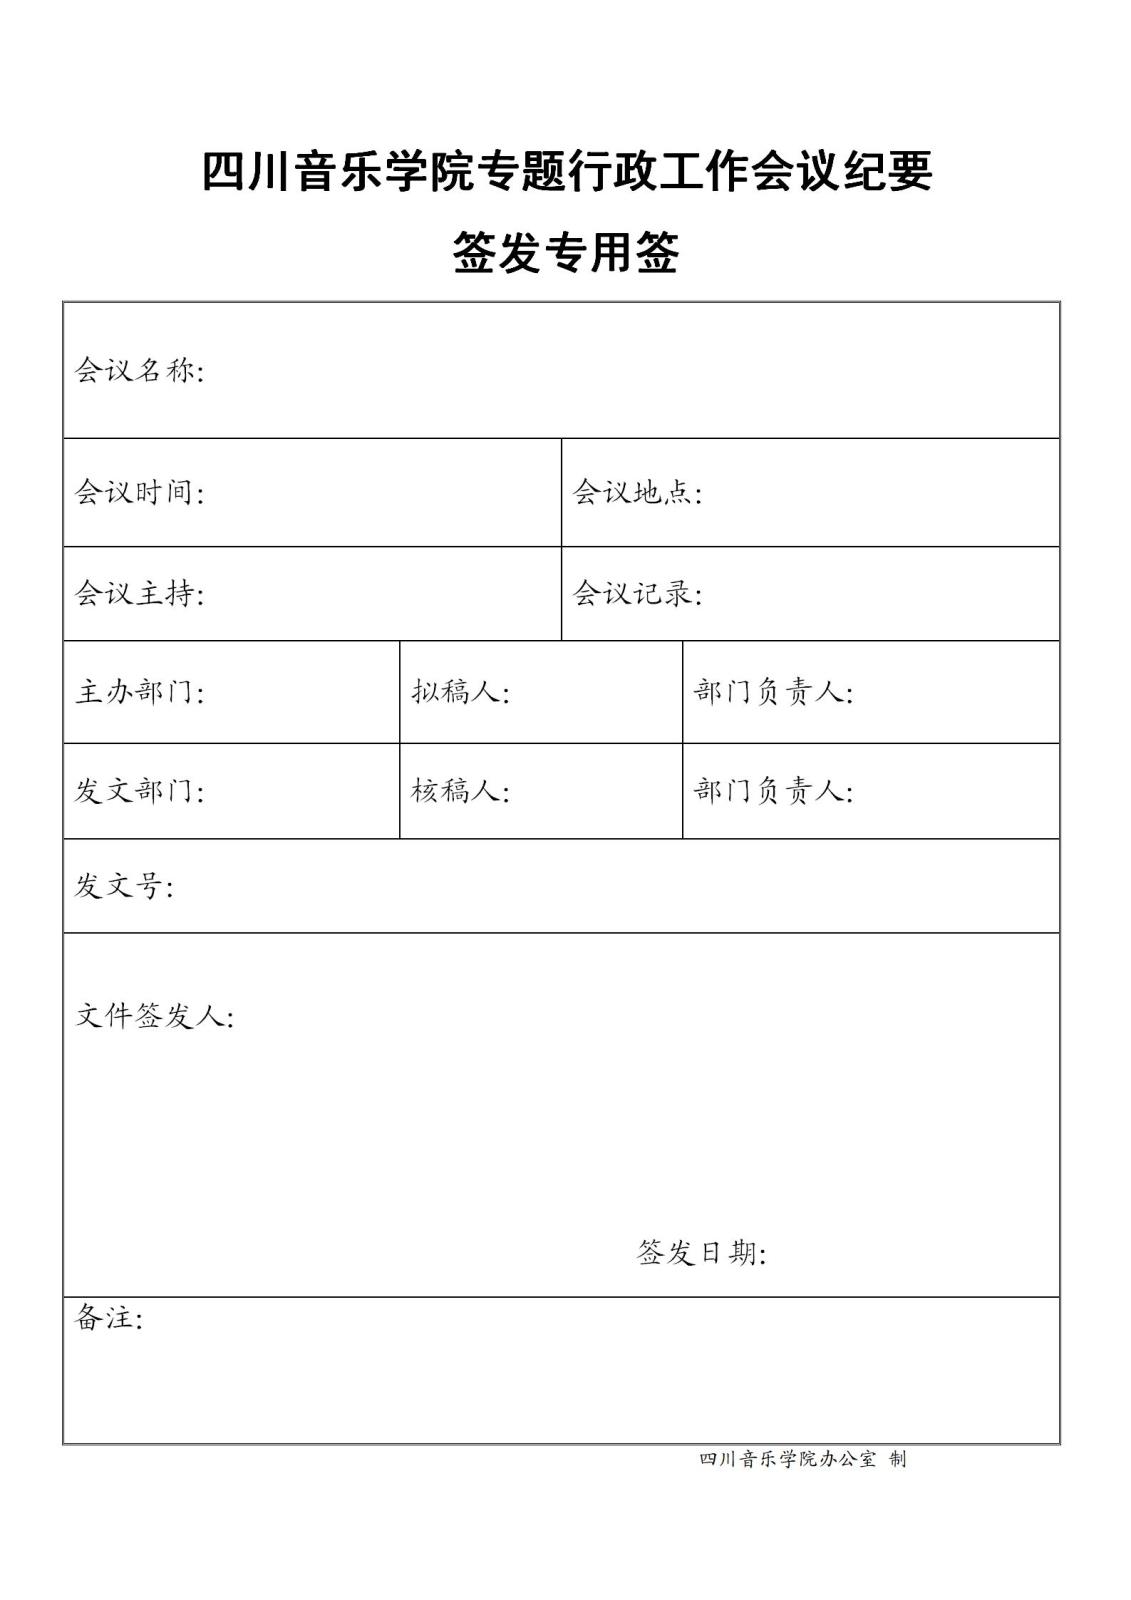 四川音乐学院专题行政工作会议纪要签发专用签.jpg